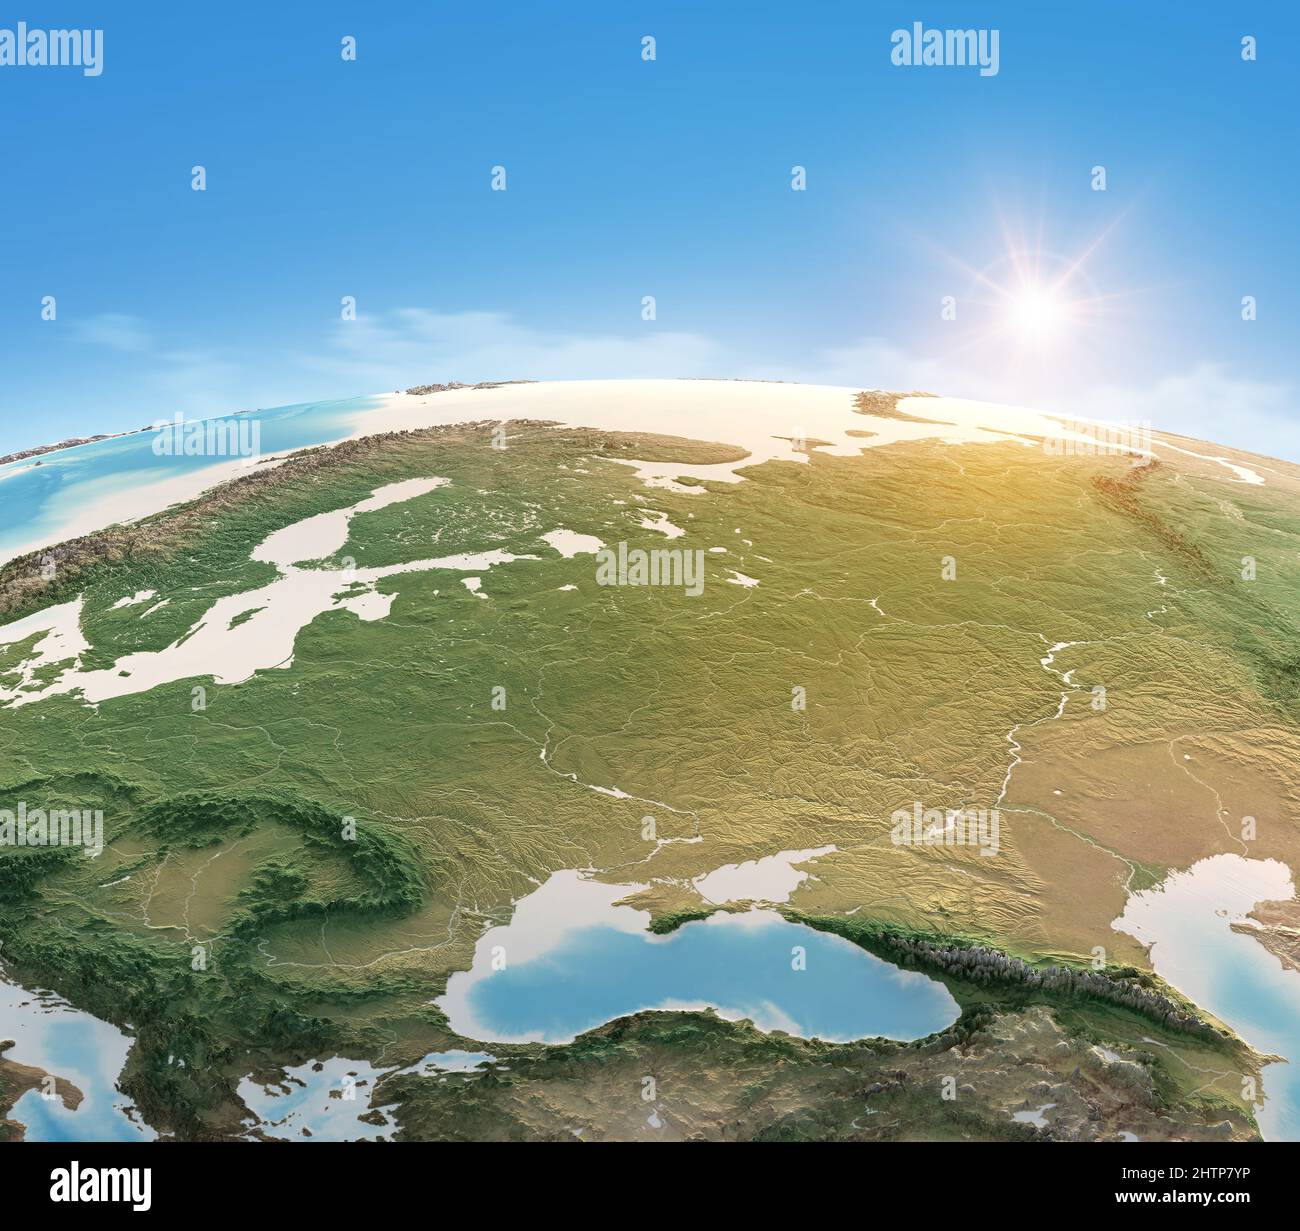 Mappa fisica del pianeta Terra, focalizzata Europa Centrale e Orientale. Vista satellitare, sole che splende all'orizzonte. Elementi forniti dalla NASA Foto Stock